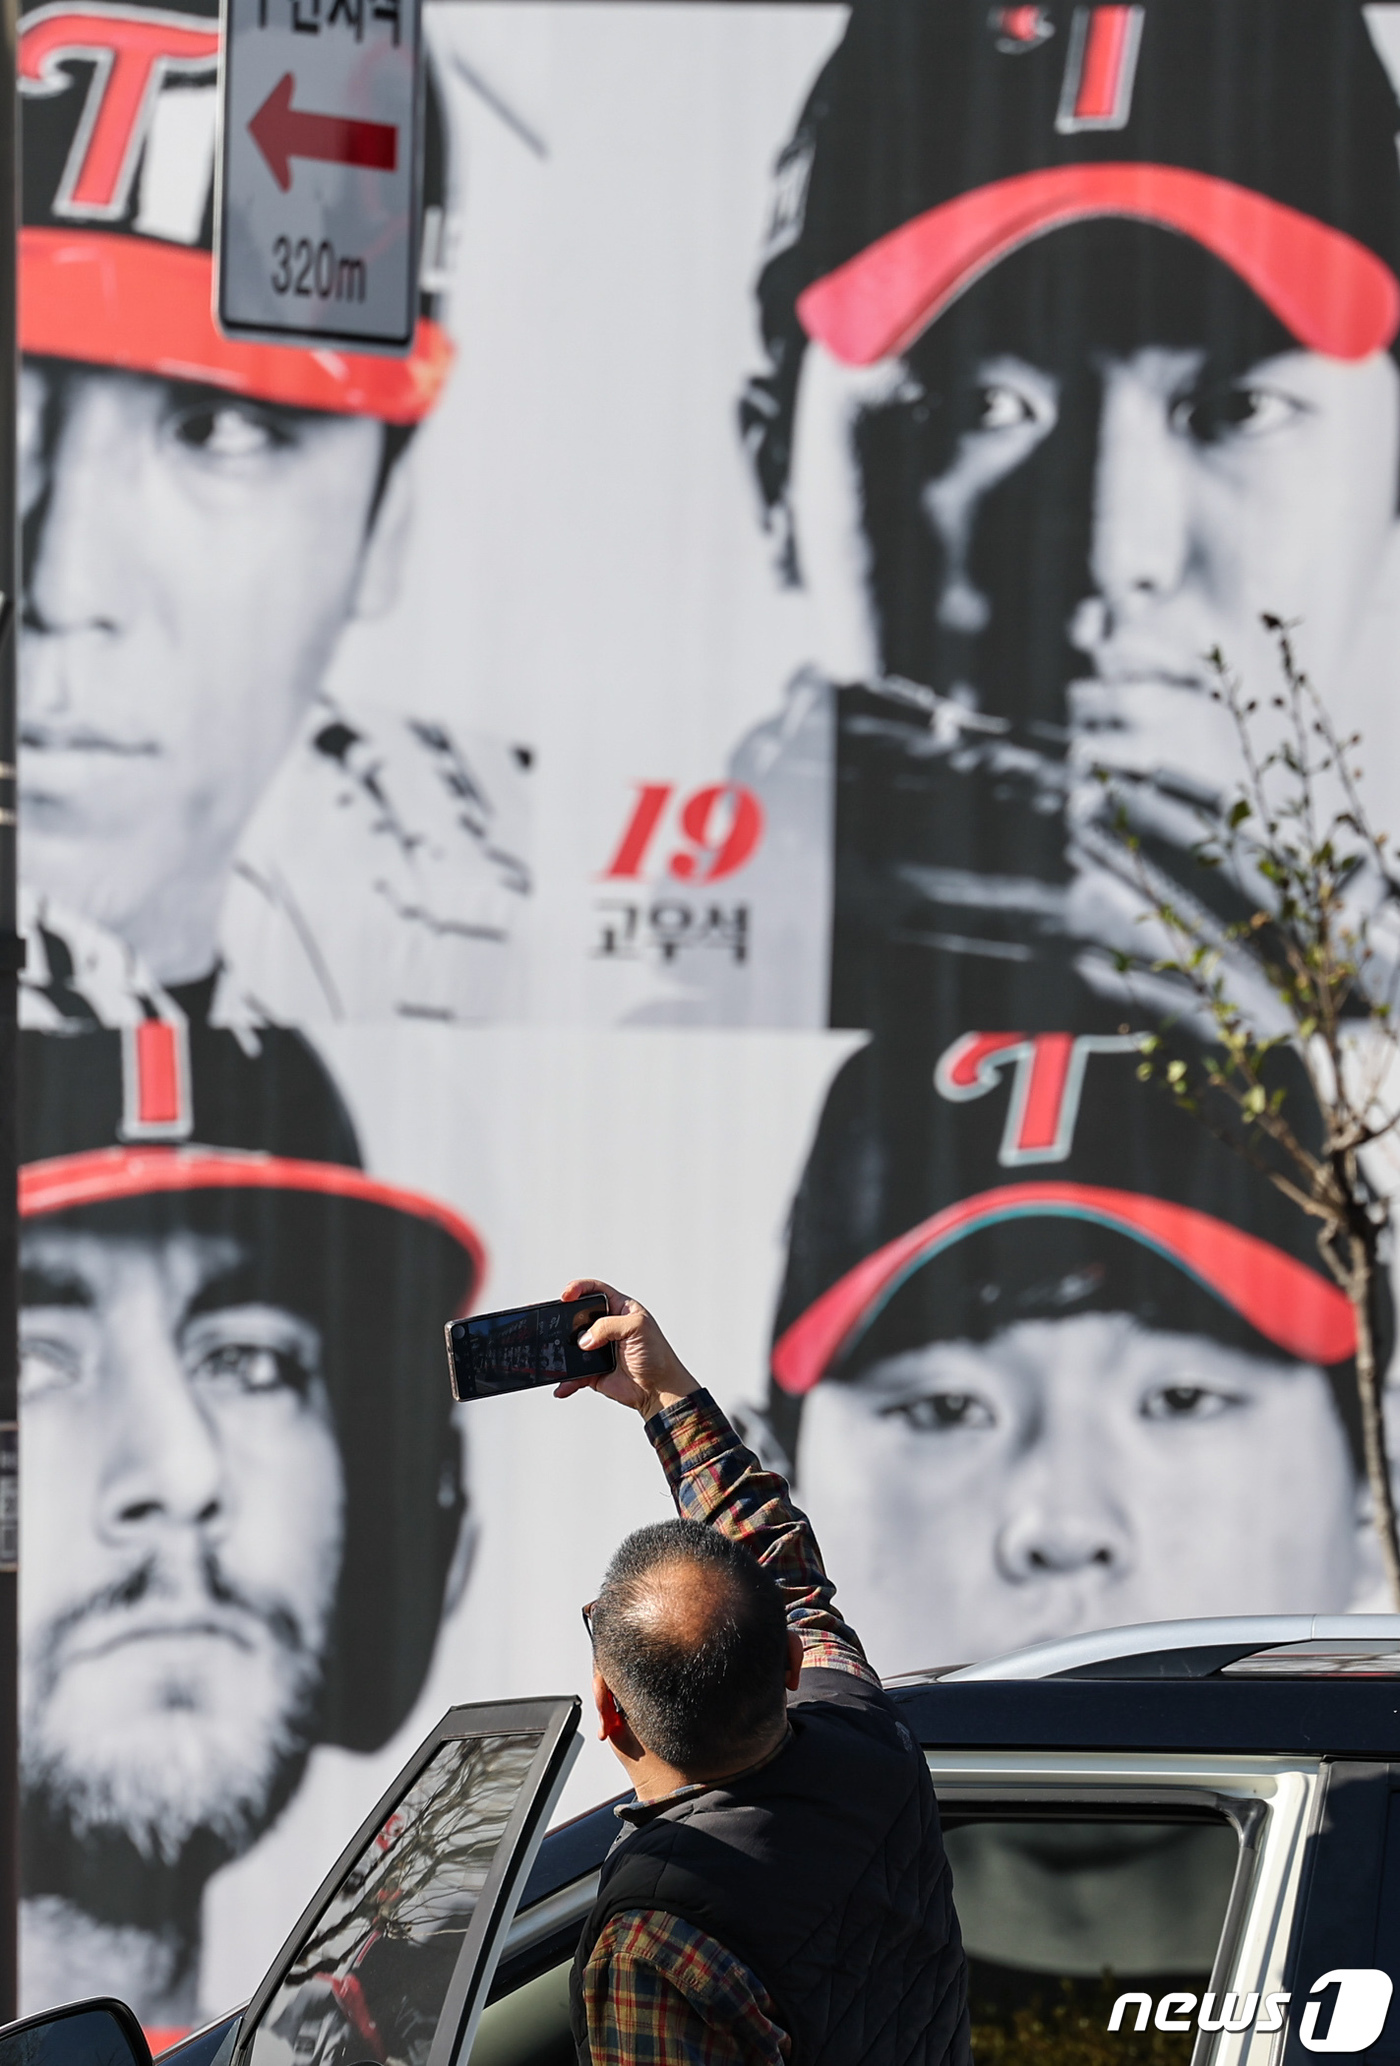 (서울=뉴스1) 김도우 기자 = 20일 서울 종로구 한 건물 외벽에 LG 트윈스의 프로야구 한국시리즈 우승을 기념해 한 팬카페가 제작한 대형 포스터 앞에서 한 운전자가 차에서 내려 …